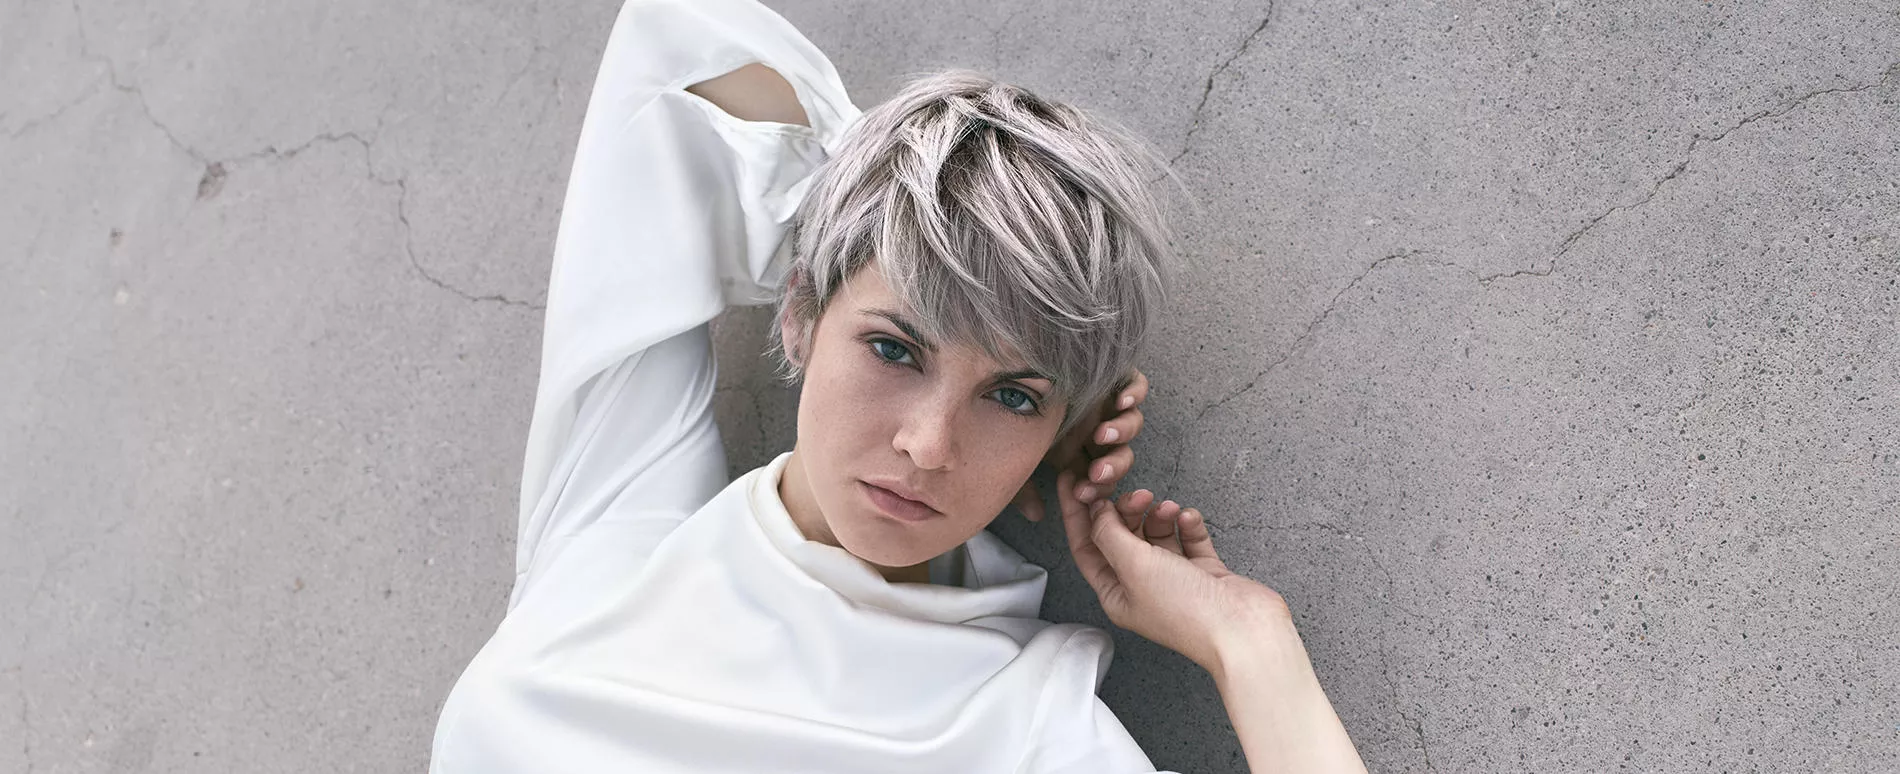 Mujer con un corte de pelo estilo pixie de color gris suave tumbada en un suelo color pizarra